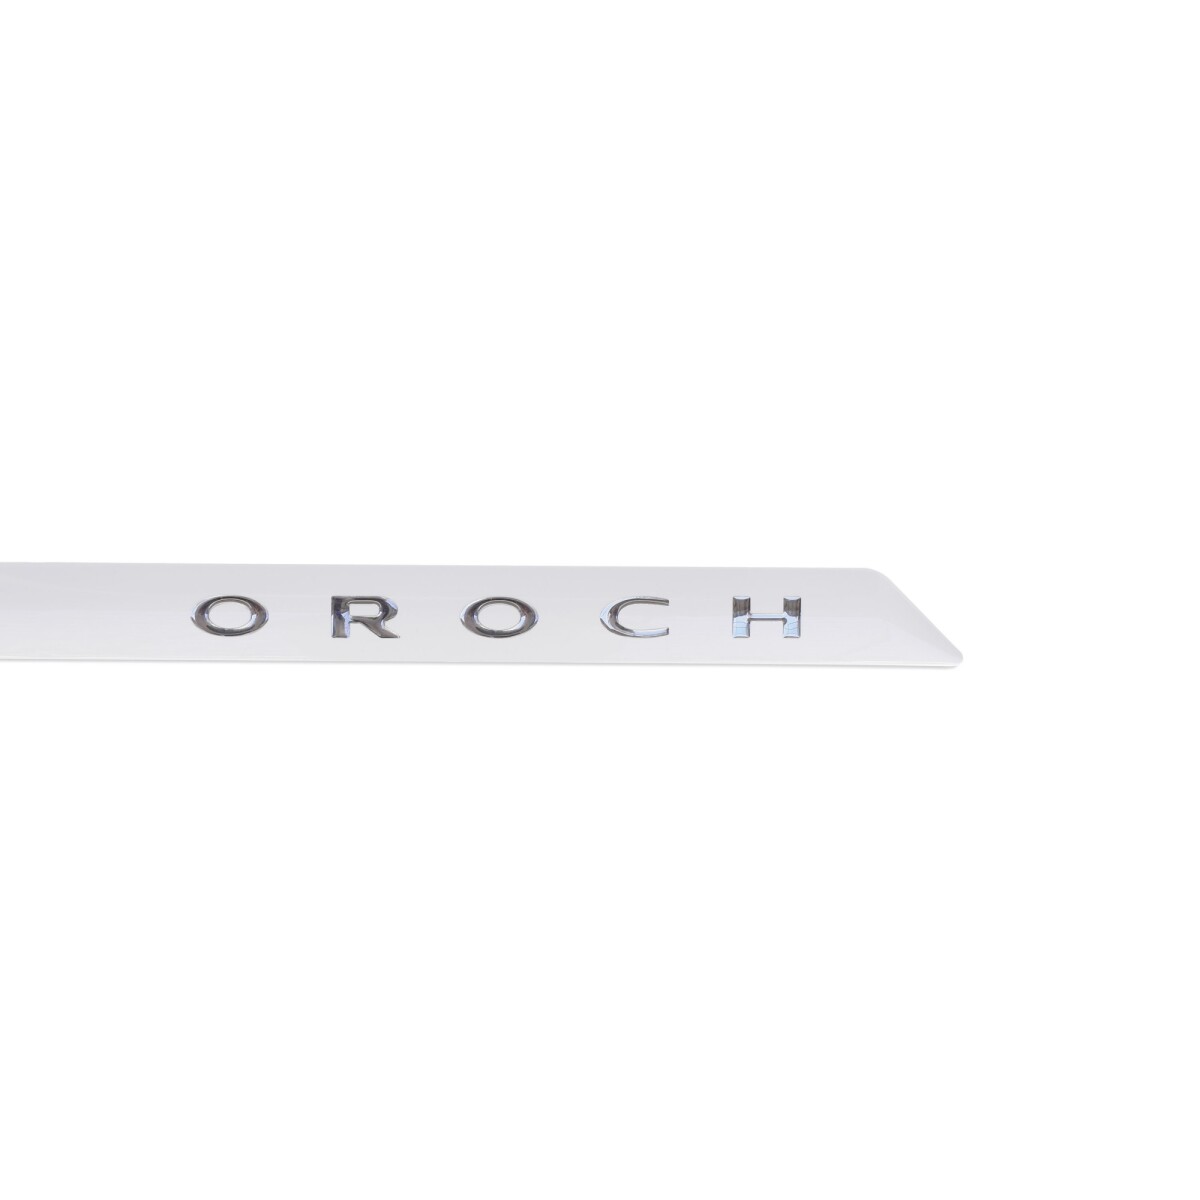 Baguetas Auto Específicas Renault Oroch Blanco 